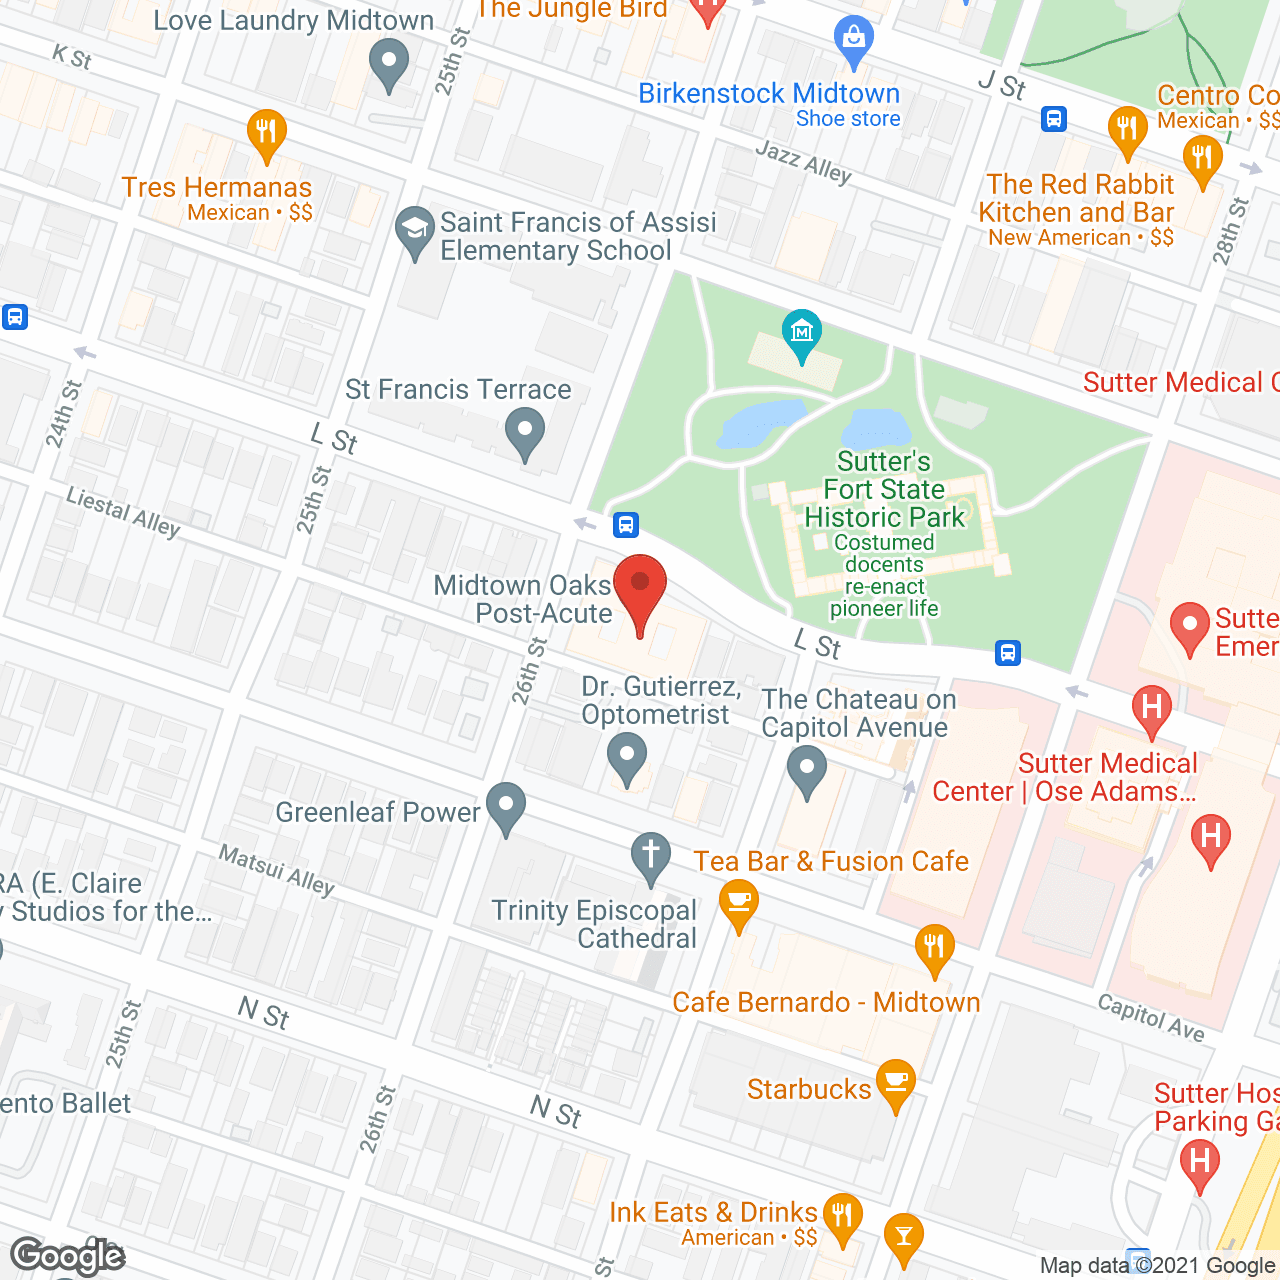 Midtown Oaks Post-Acute in google map